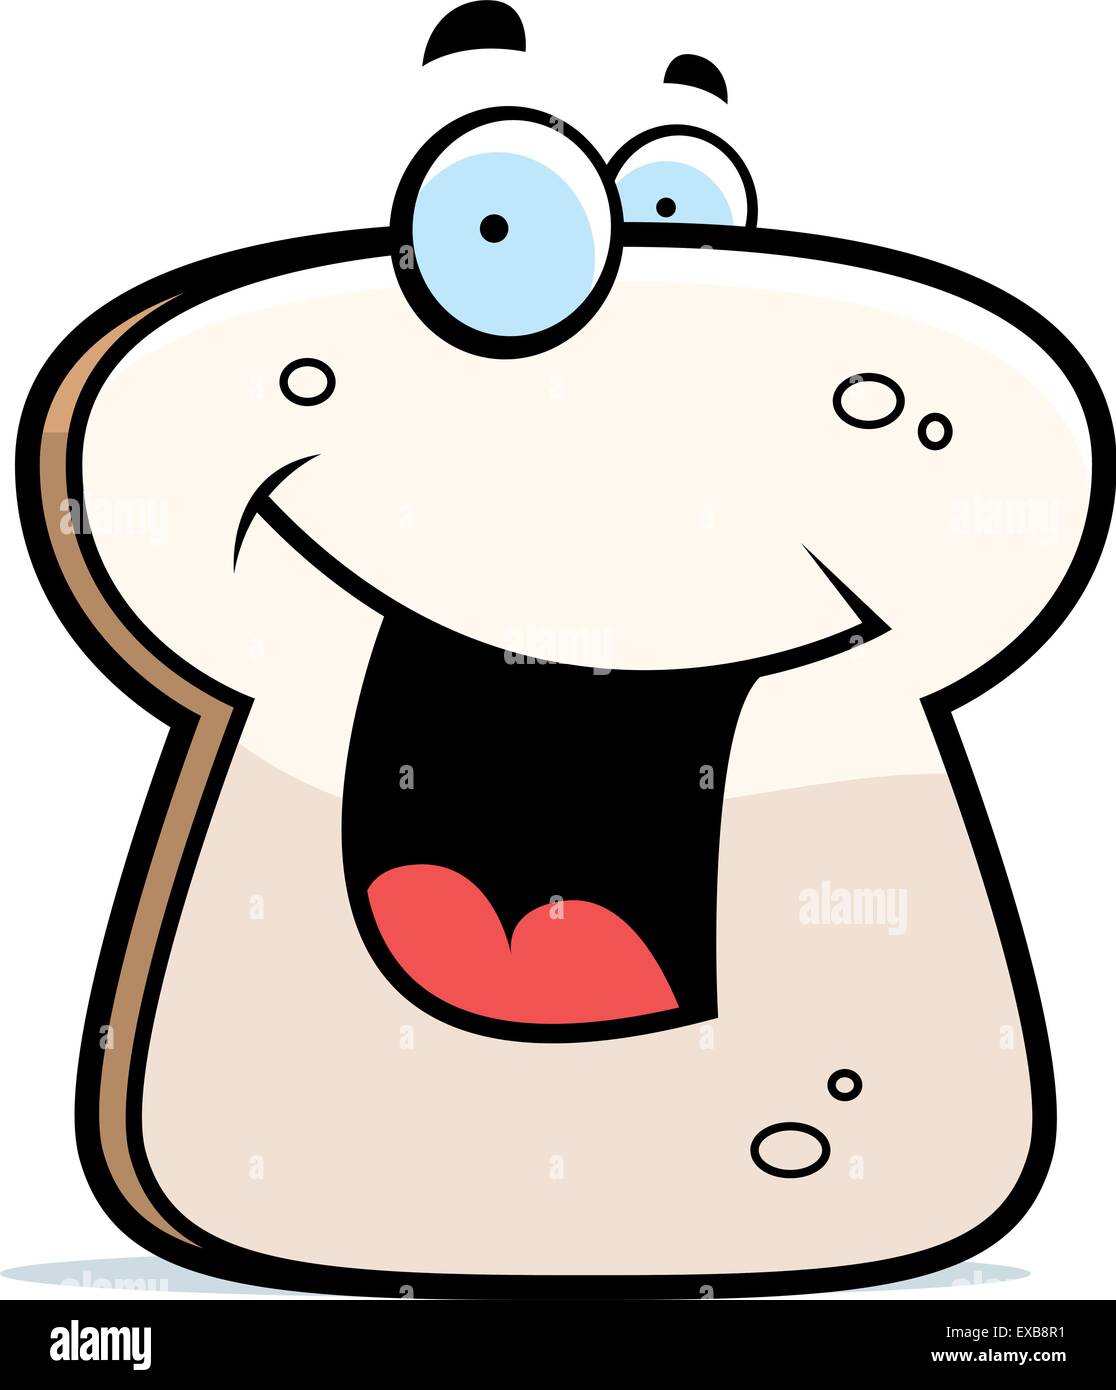 Ein Cartoon Stück Brot lächelnd und glücklich. Stock Vektor